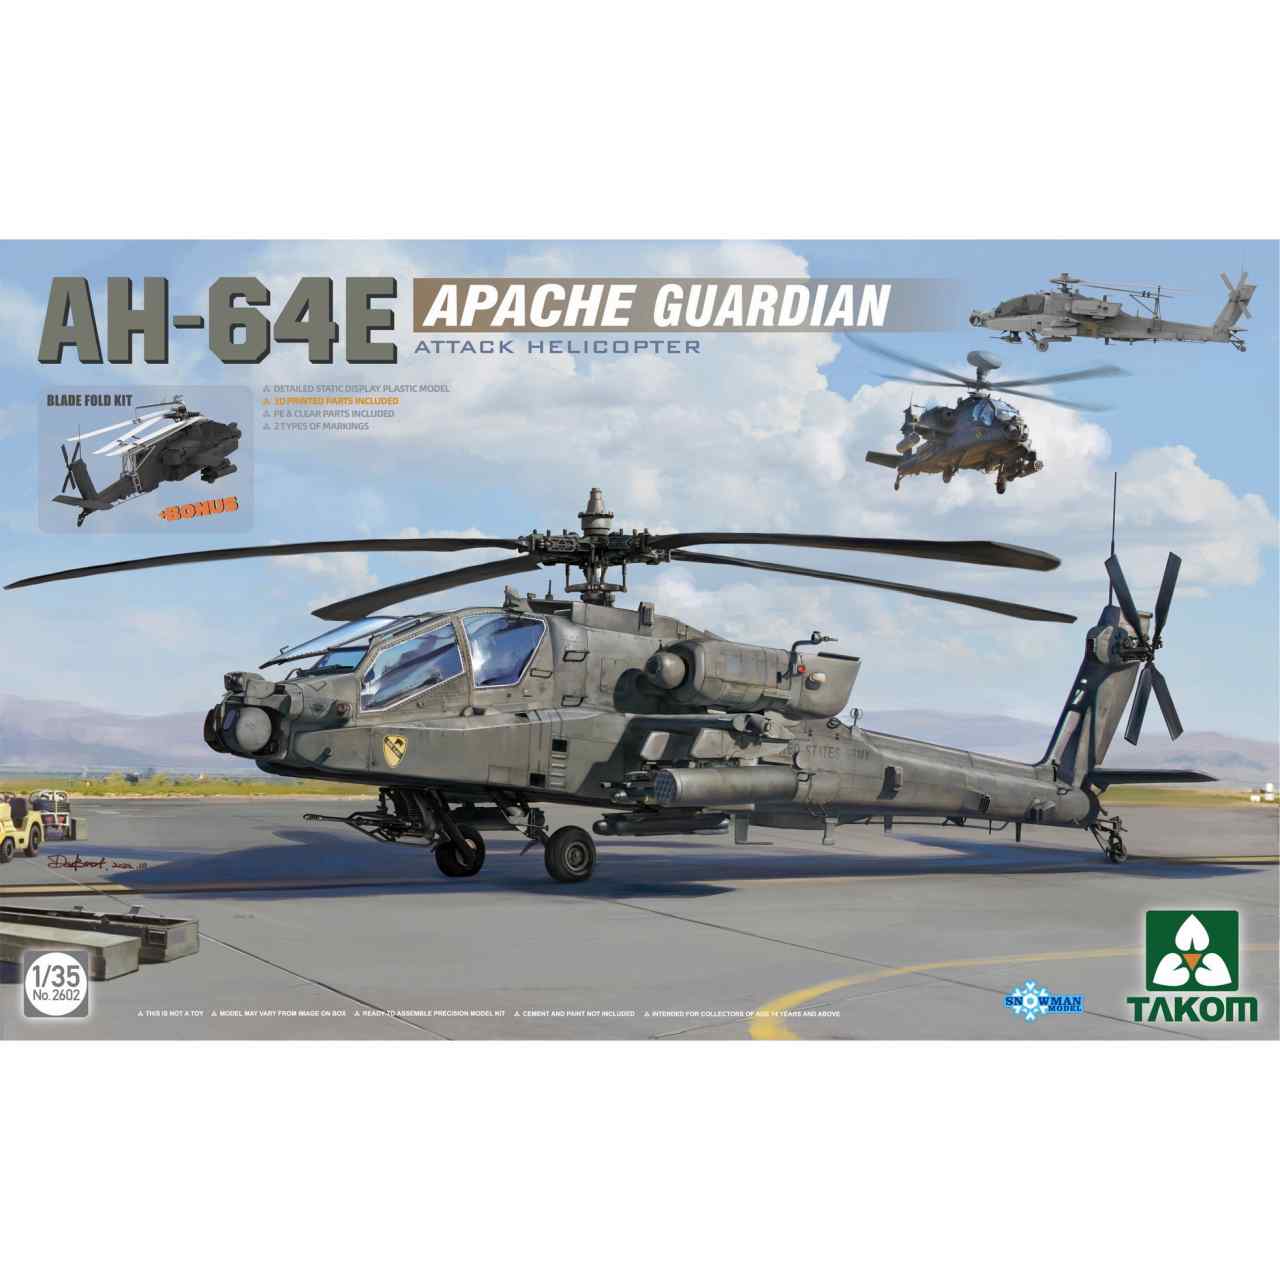 【新製品】2602 1/35 AH-64E アパッチ・ガーディアン 攻撃ヘリコプター